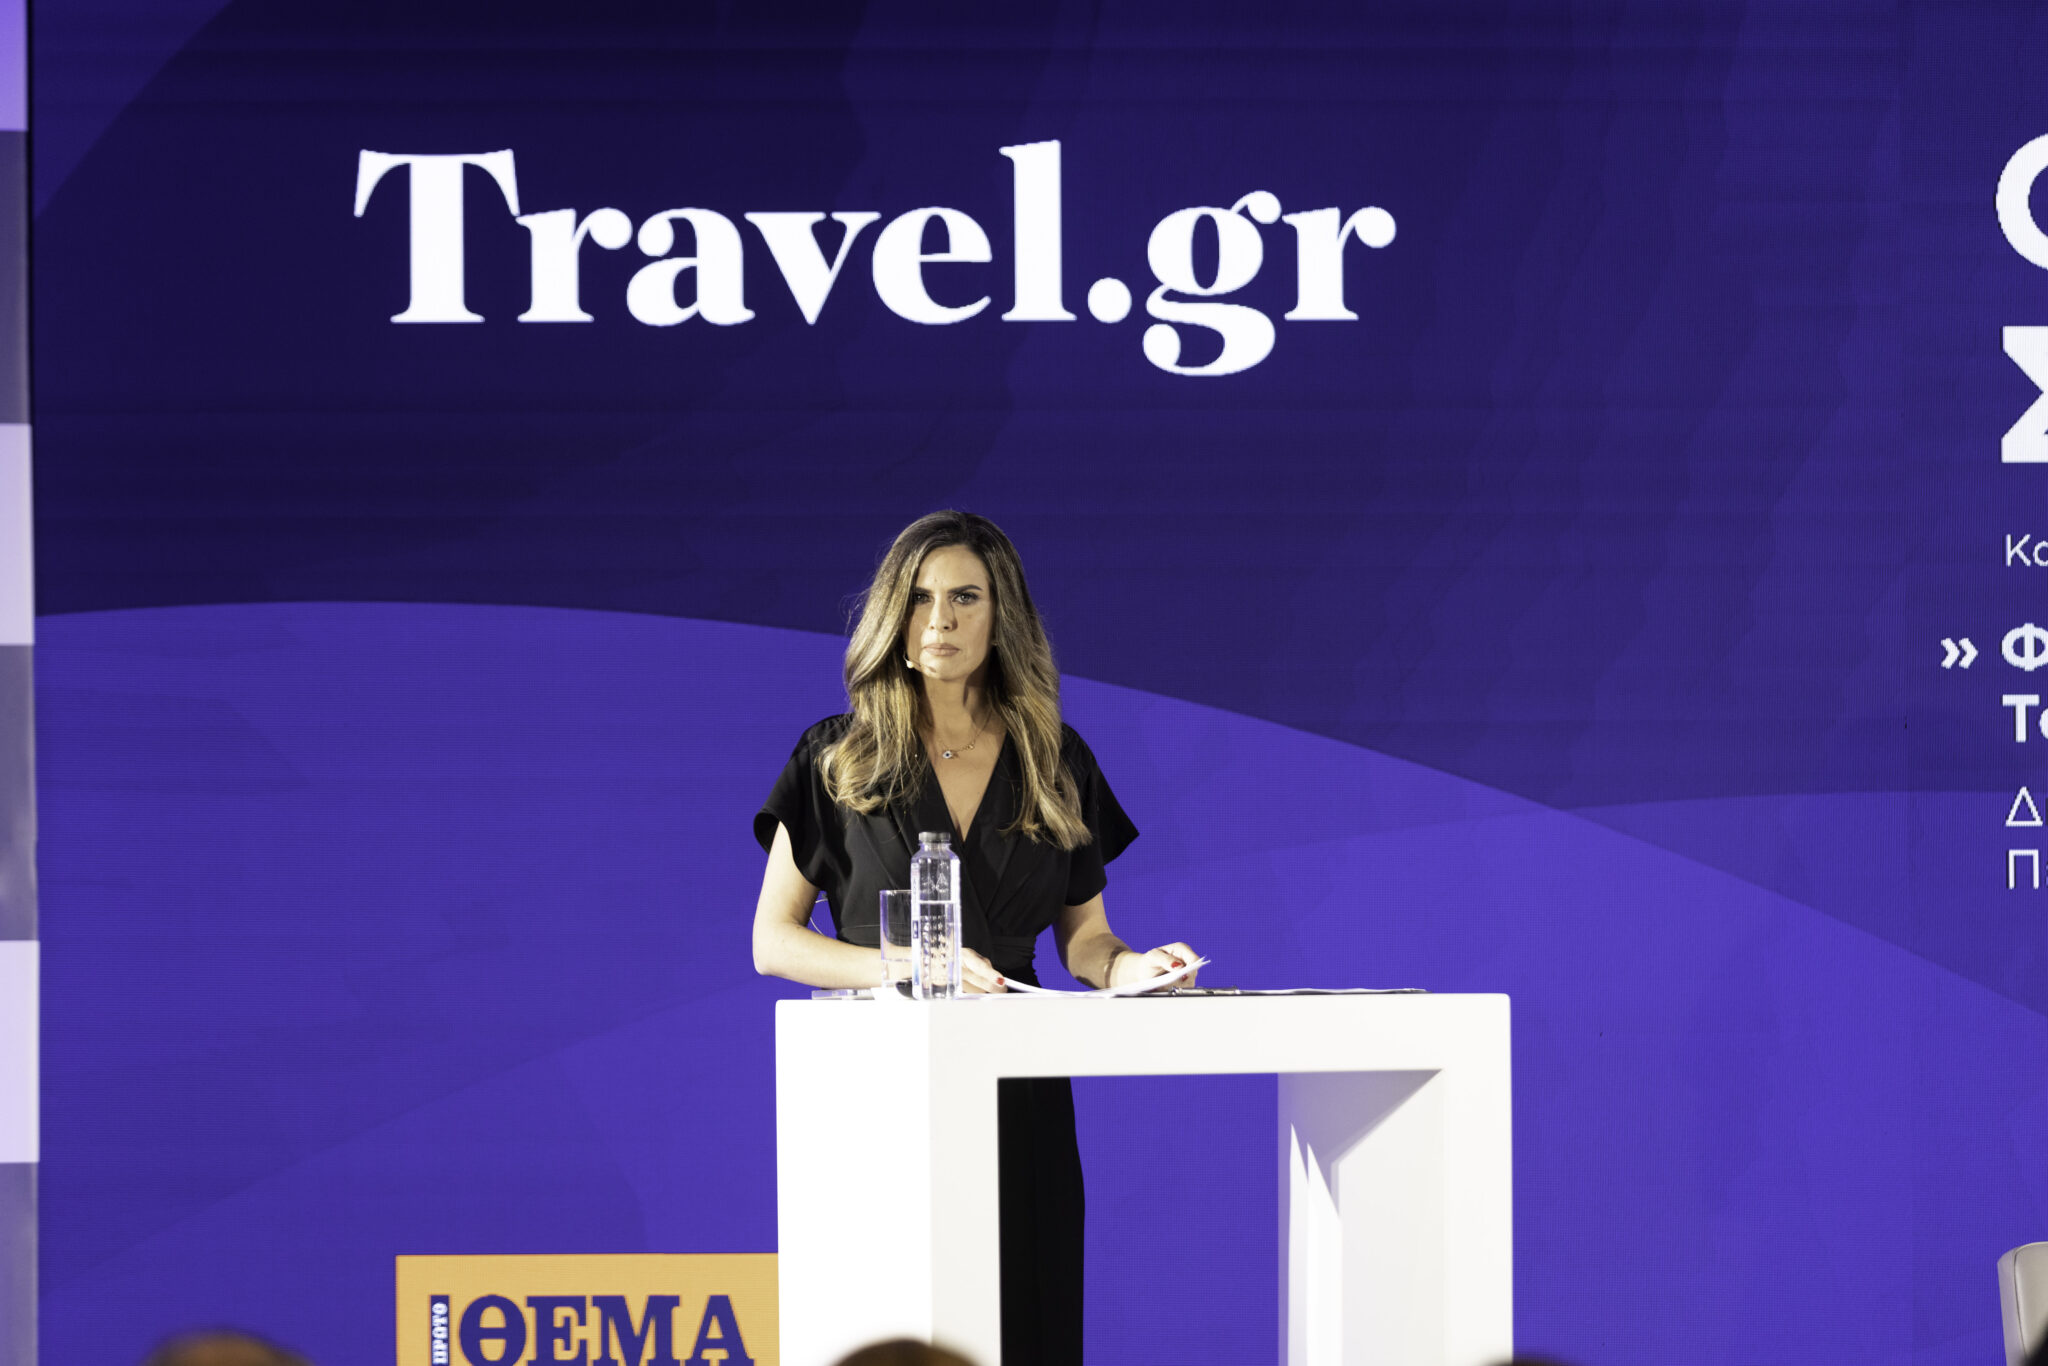 Το επιτυχημένο συνέδριο του Travel.gr και οι άφαντοι ήρωες πίσω από αυτό
